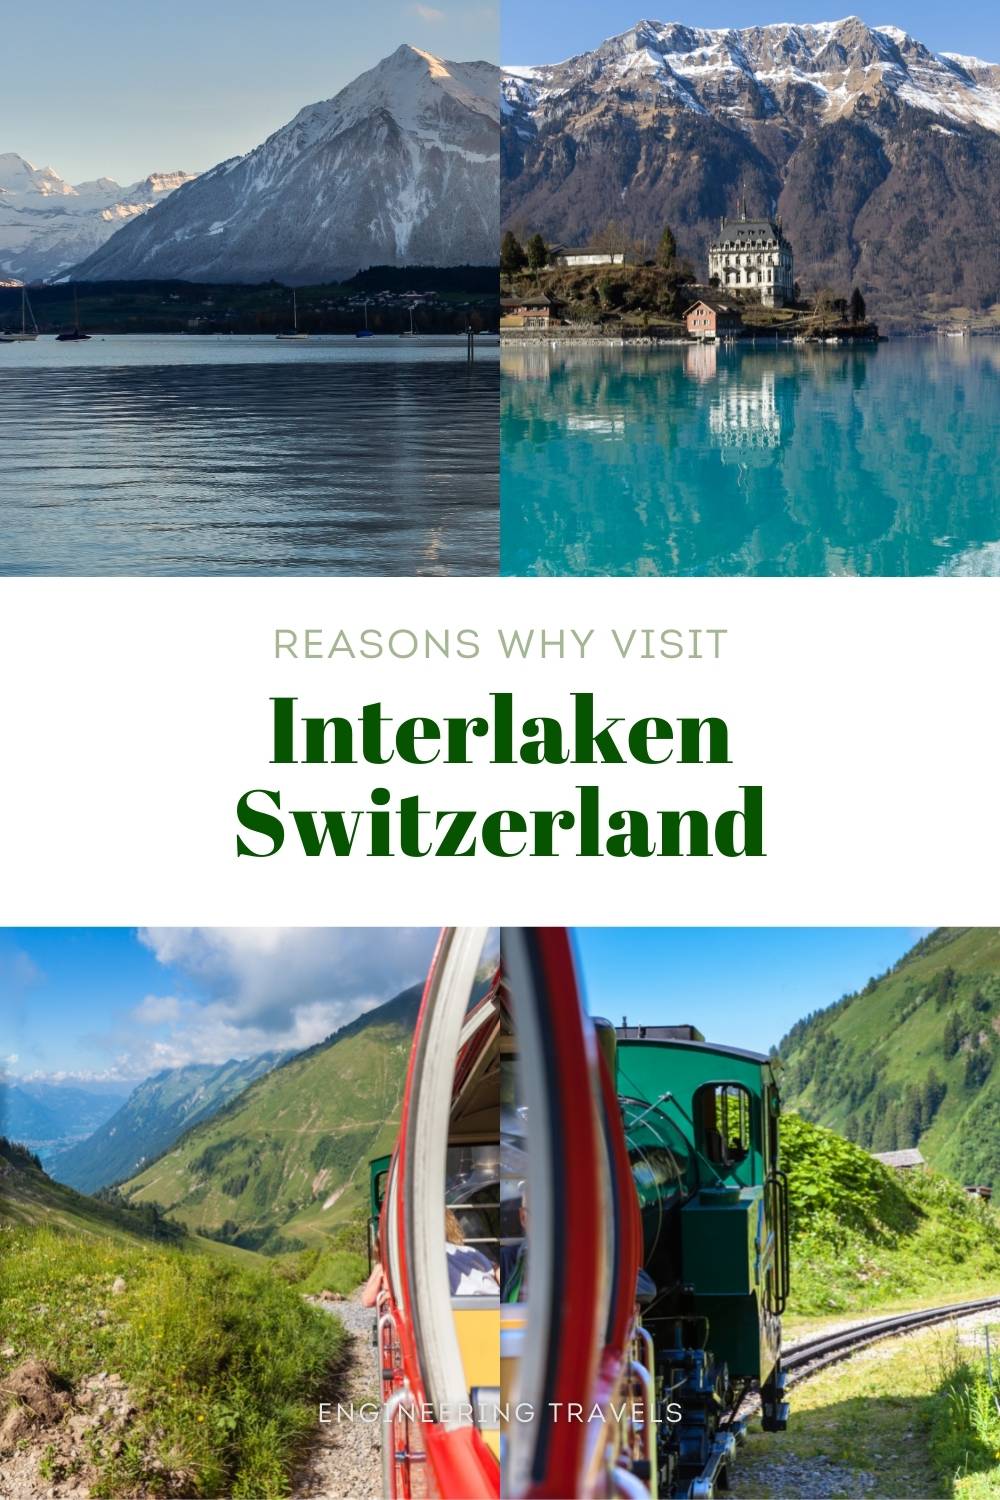 Interlaken Travel Guide: Things That Make It Worth Visiting